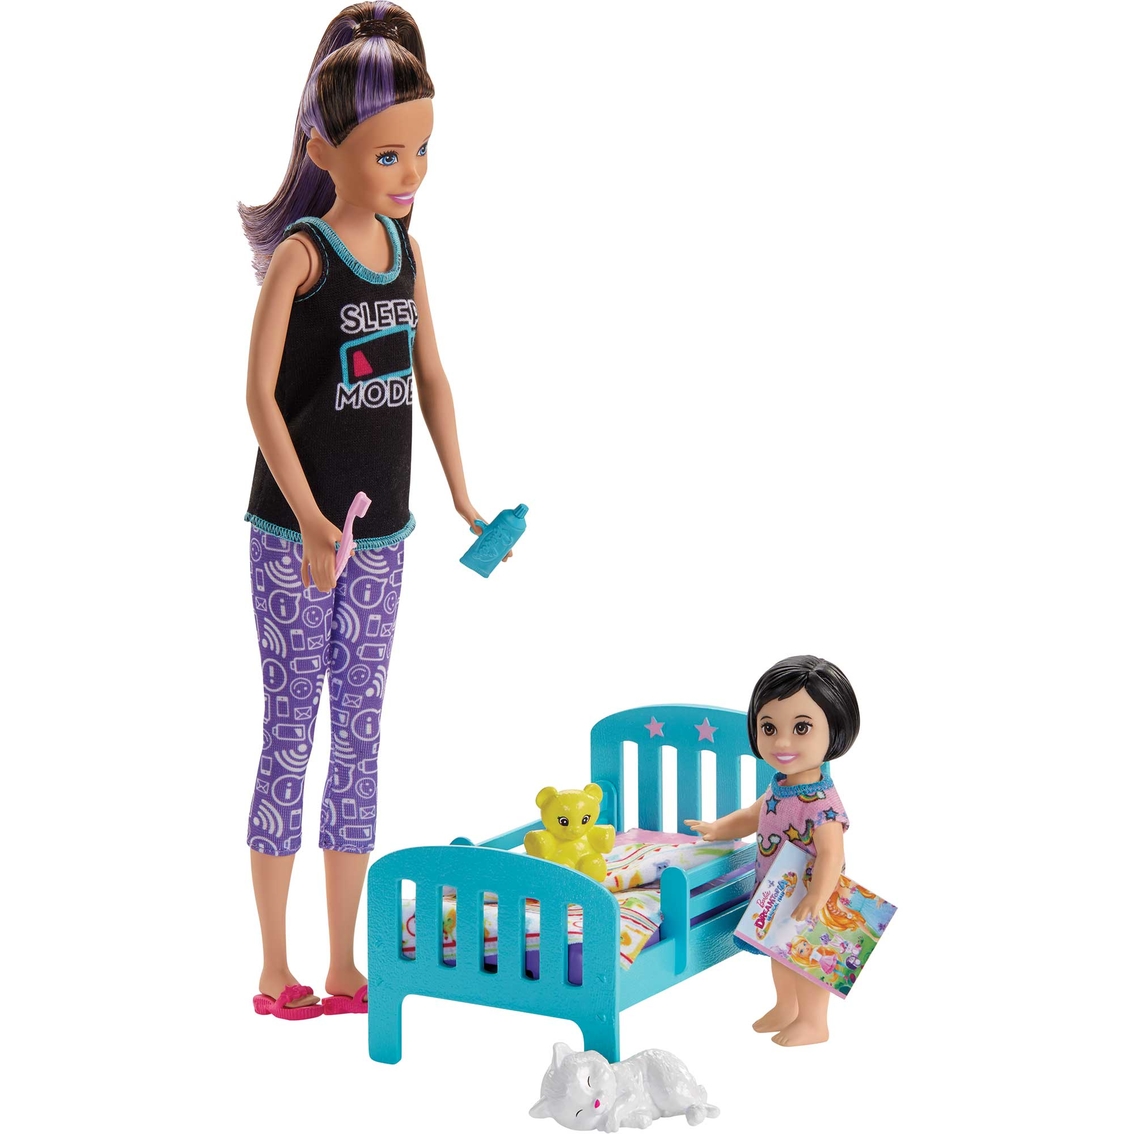 Barbie Bedtime Set - Image 2 of 2